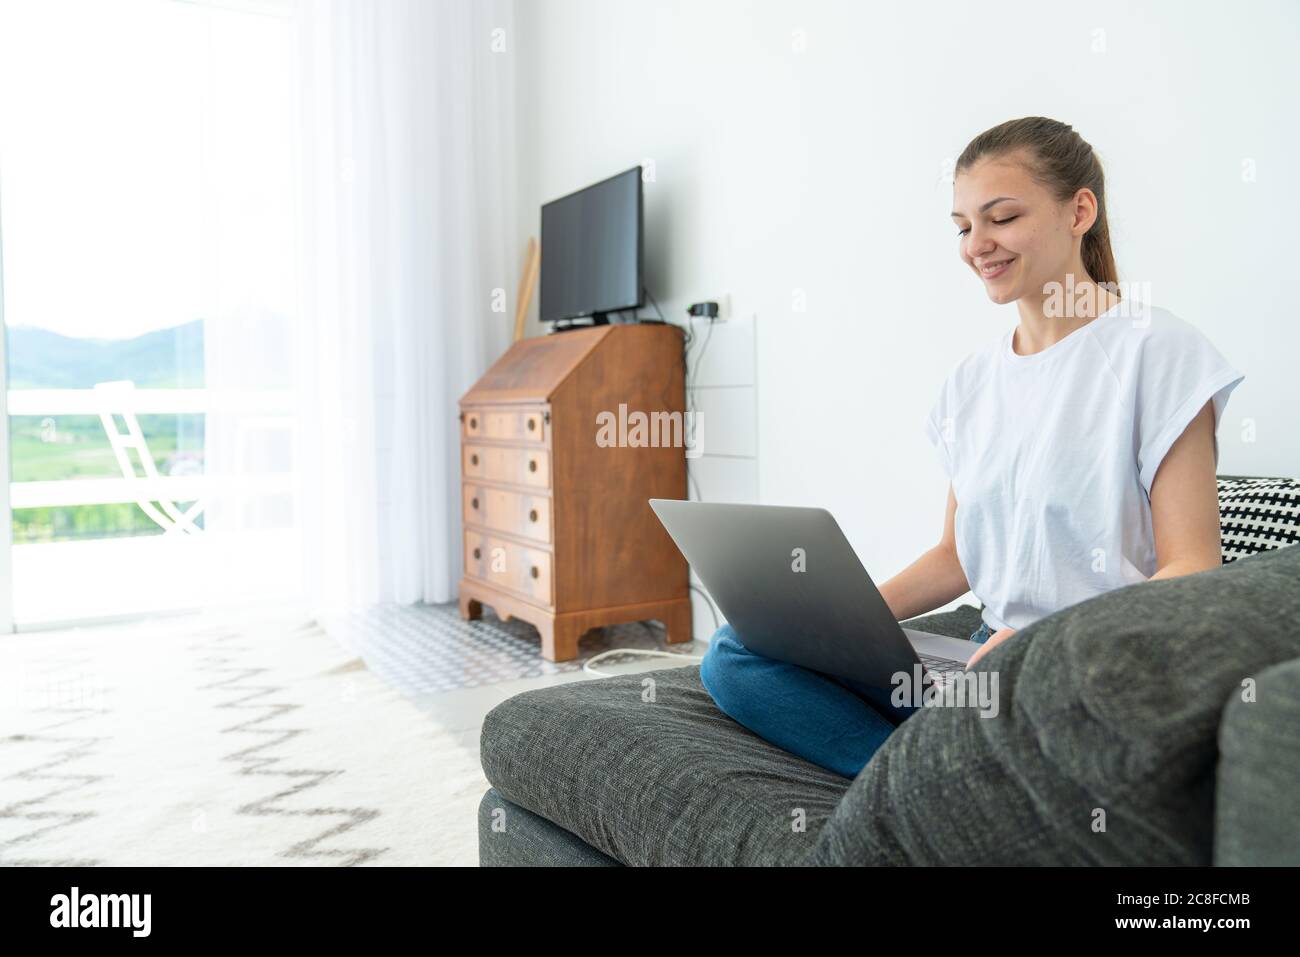 Sorridente giovane donna attraente seduta sul divano usando il laptop che comunica lavorando in linea a casa, ragazza teen felice che scrive sul computer Foto Stock